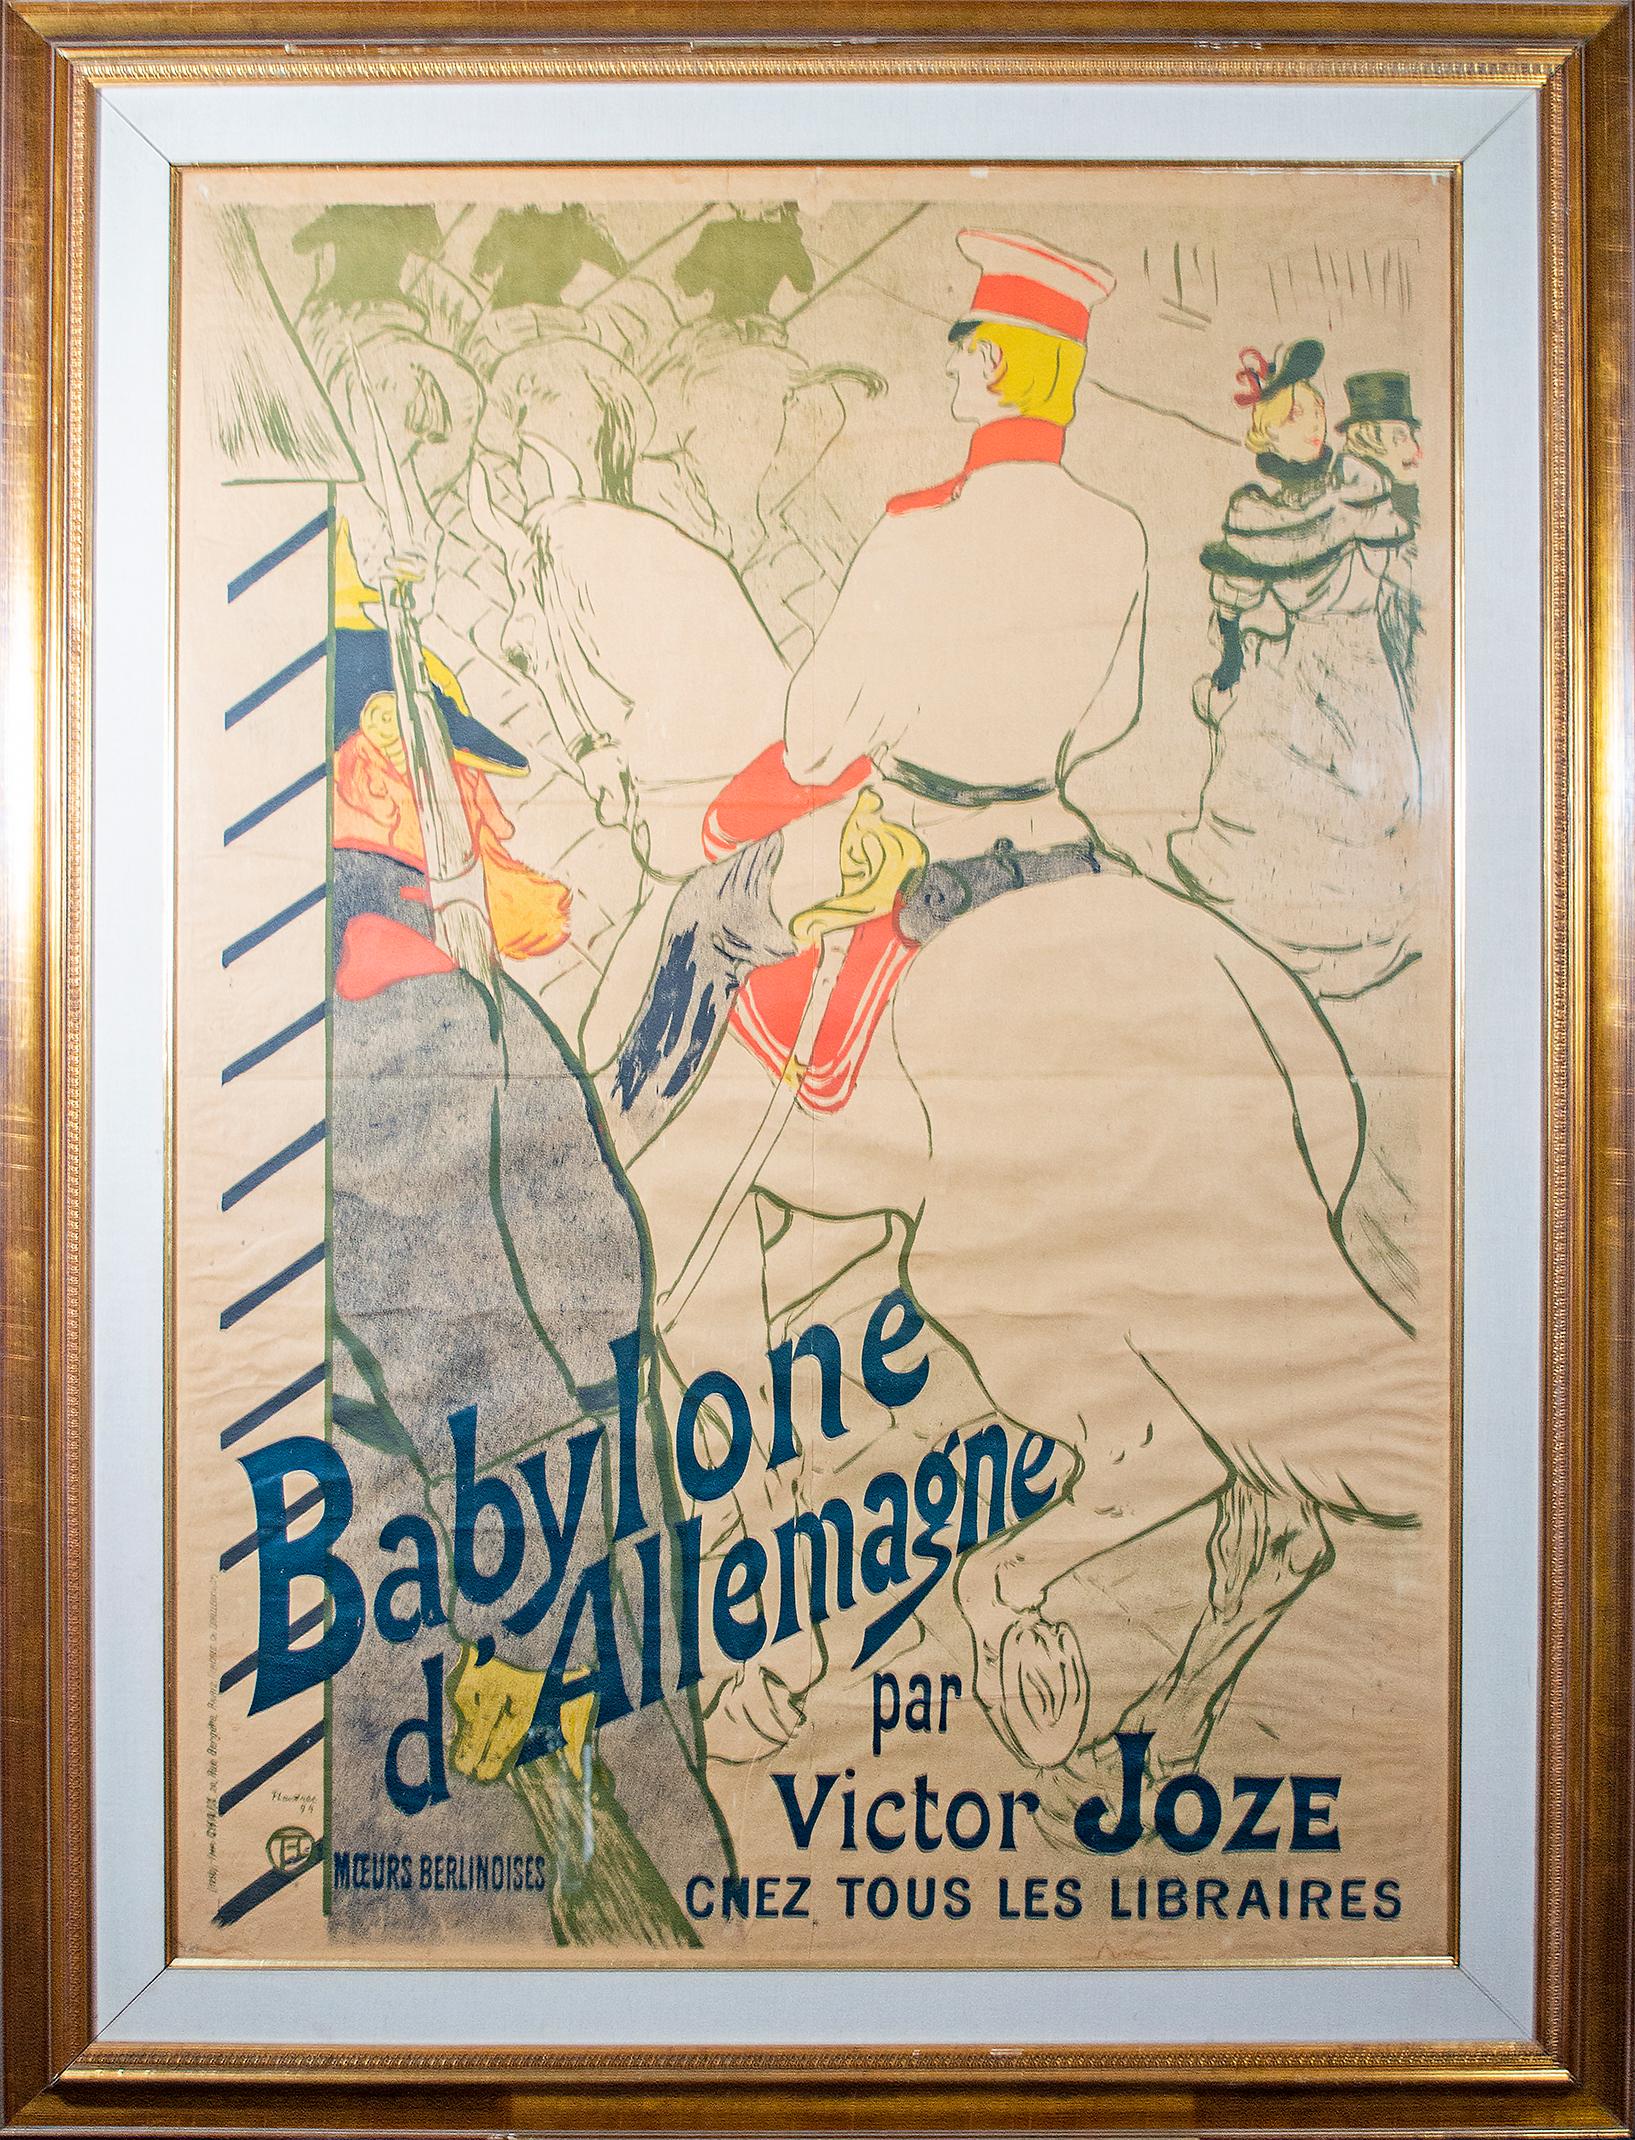 'Babylone d'Allemagne' original lithograph poster by Henri de Toulouse-Lautrec